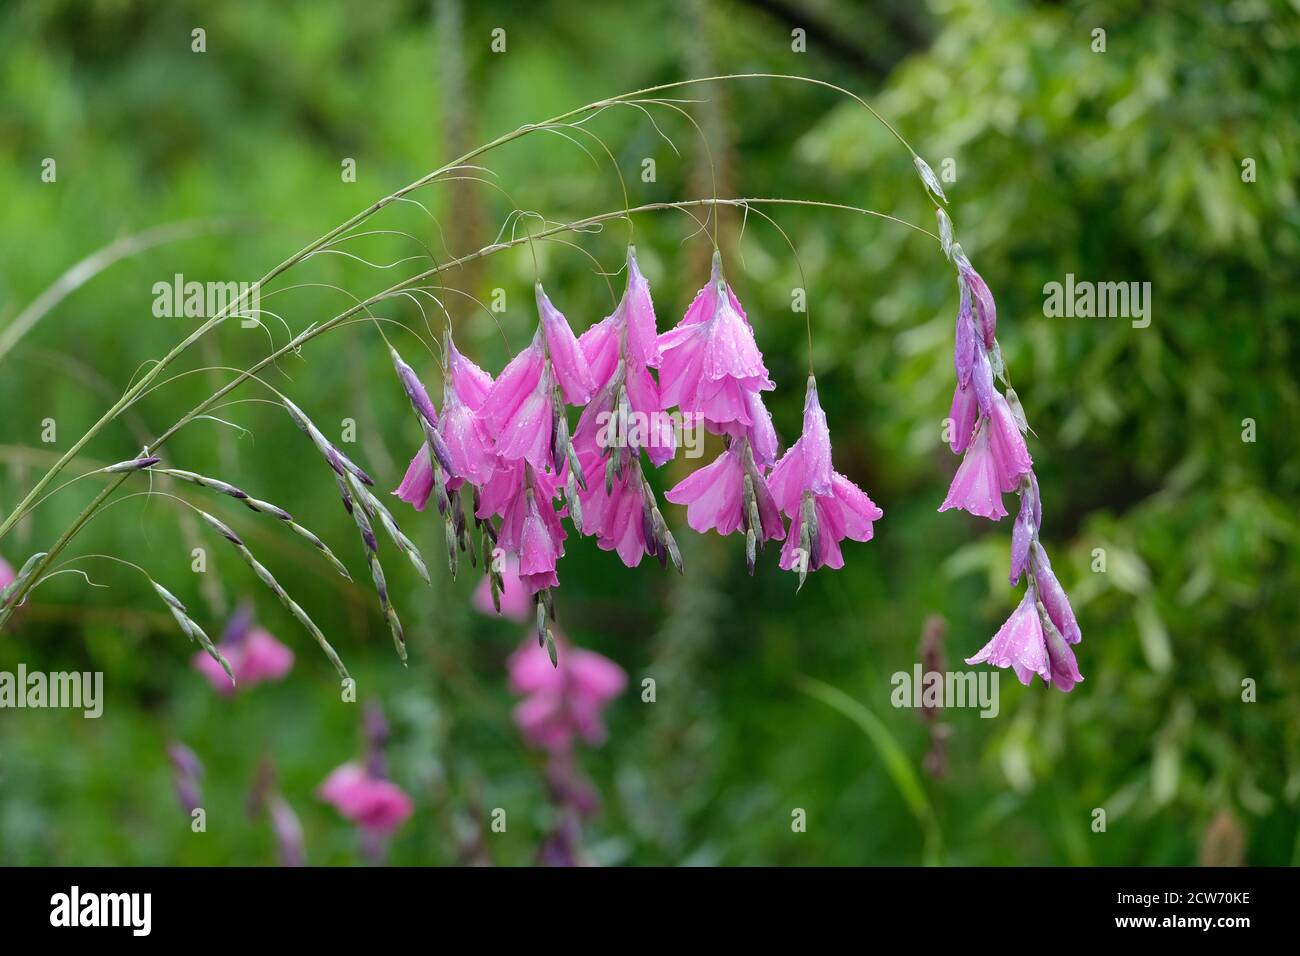 https://c8.alamy.com/comp/2CW70KE/dierama-pulcherrimum-angels-fishing-rod-wedding-bells-drooping-or-pendant-flowers-of-silvery-grey-pink-wandflower-2CW70KE.jpg